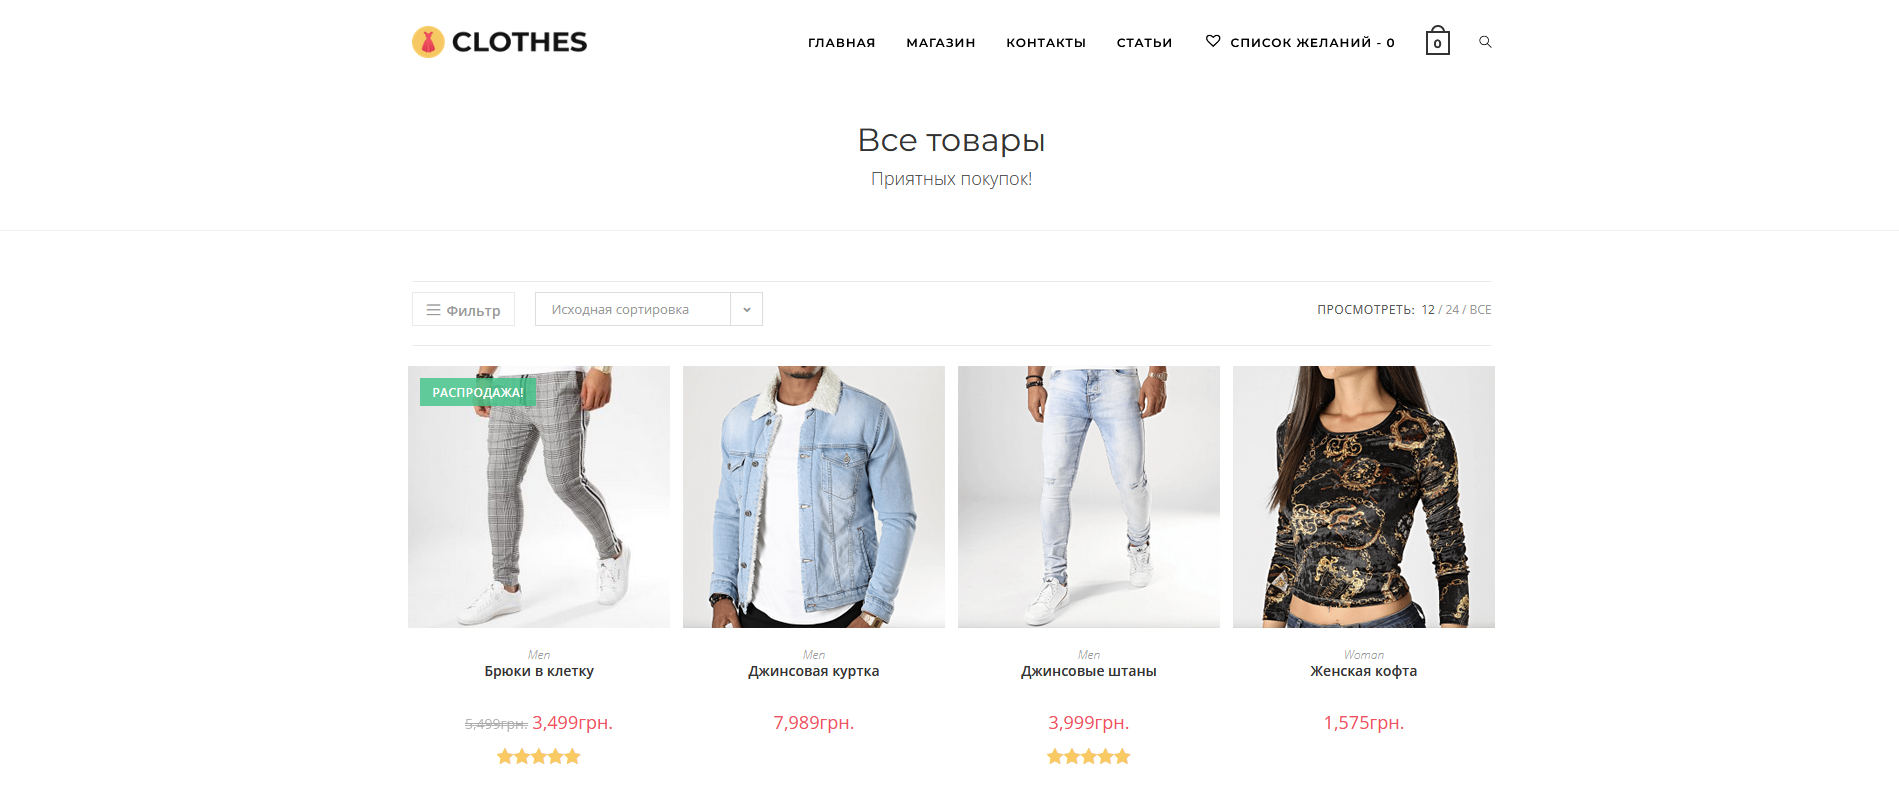 Создание интернет-магазина одежды